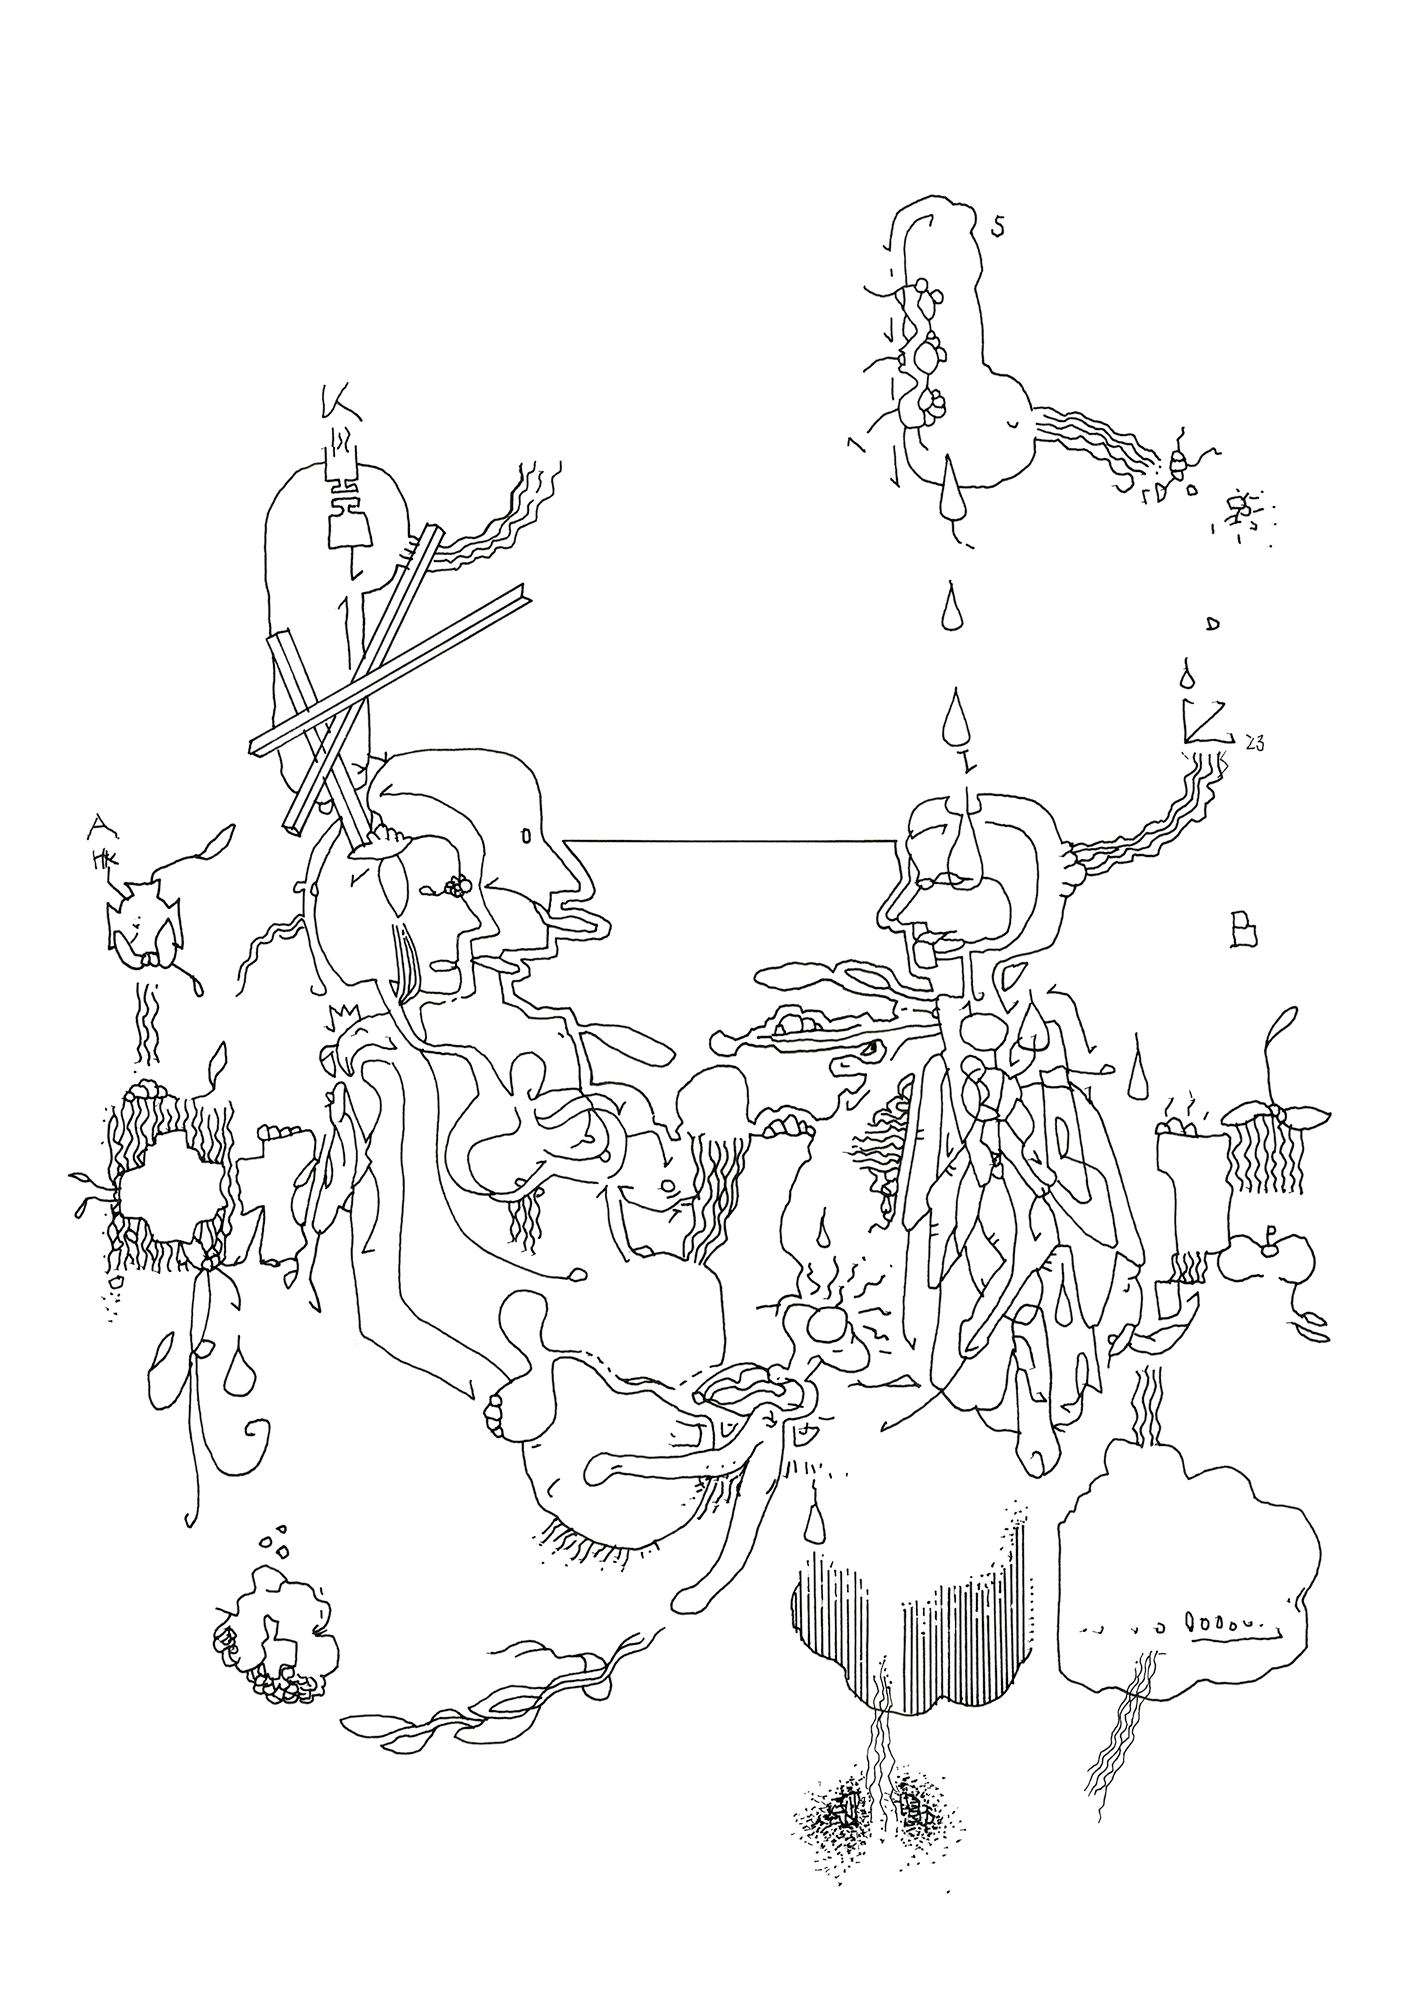 Hannes Kater: Tageszeichnung (Zeichnung/drawing) vom 21.03.2023 (1414 x 2000 Pixel)